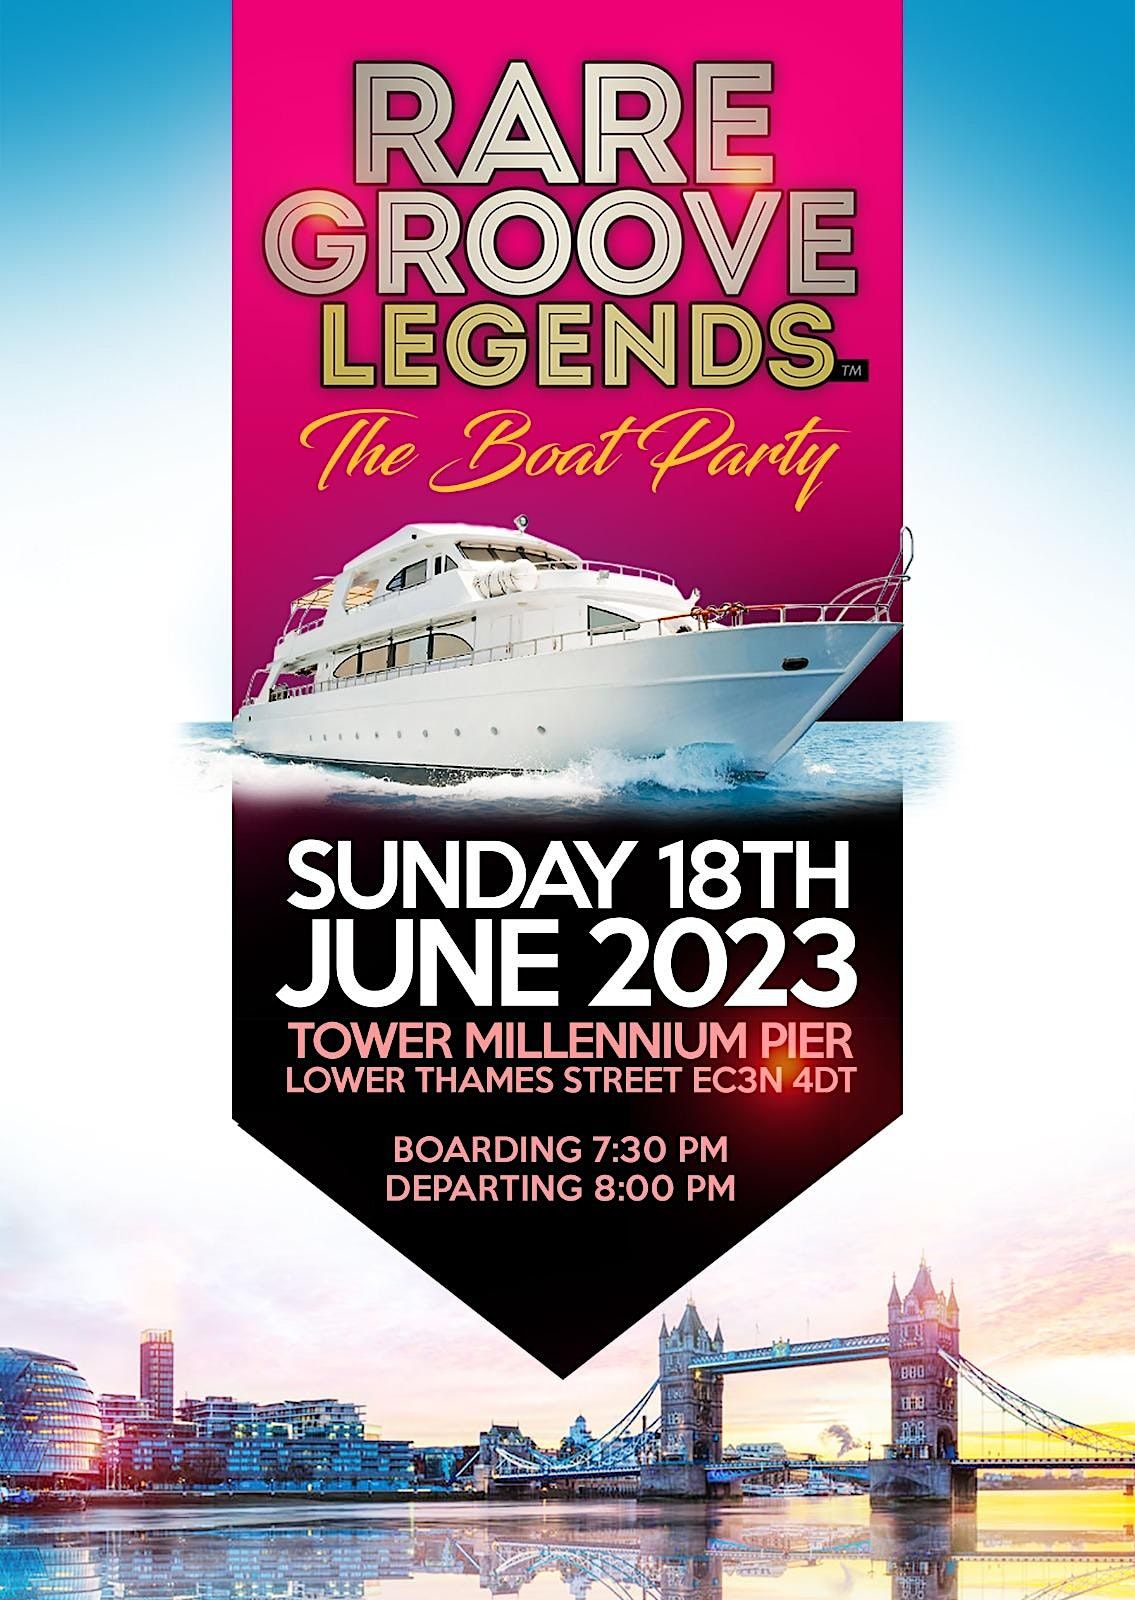 Rare Groove Legends Boat Party\u2026\u2026.Here We Go Again\u2026